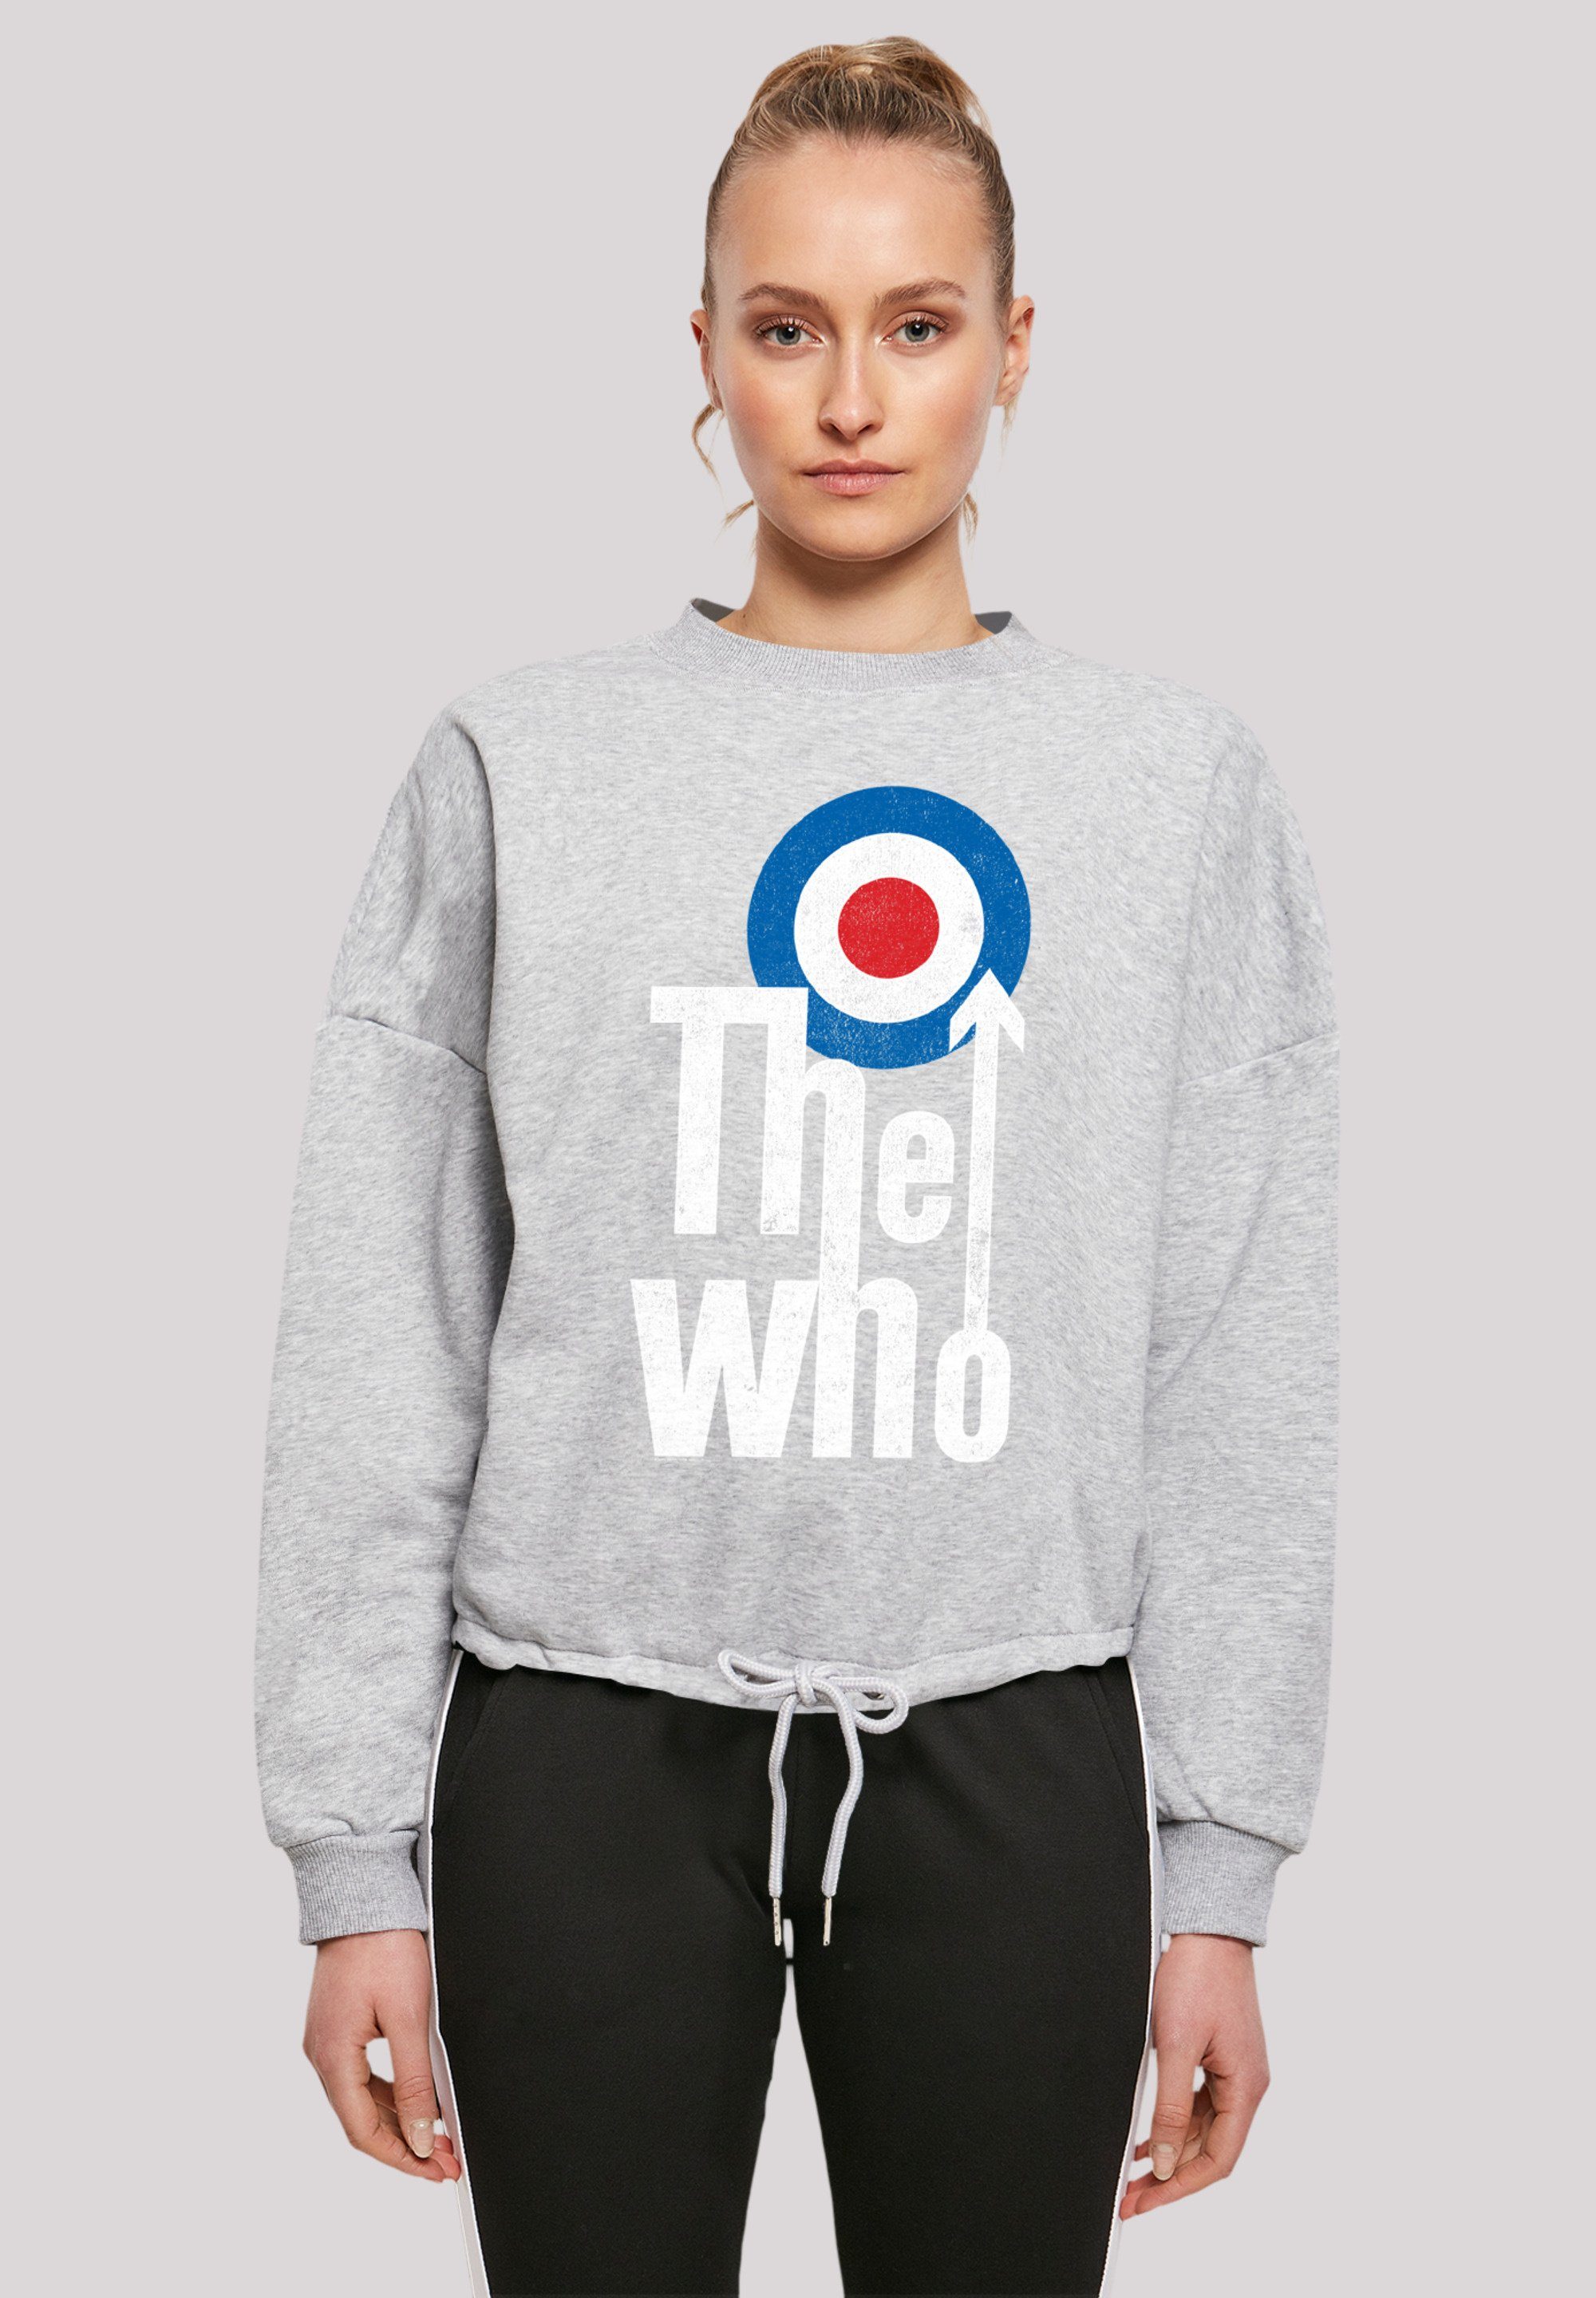 F4NT4STIC Sweatshirt The Who Premium Ärmel Band und geschnittenen Kordelzug am Rock Bündchen Weit Qualität